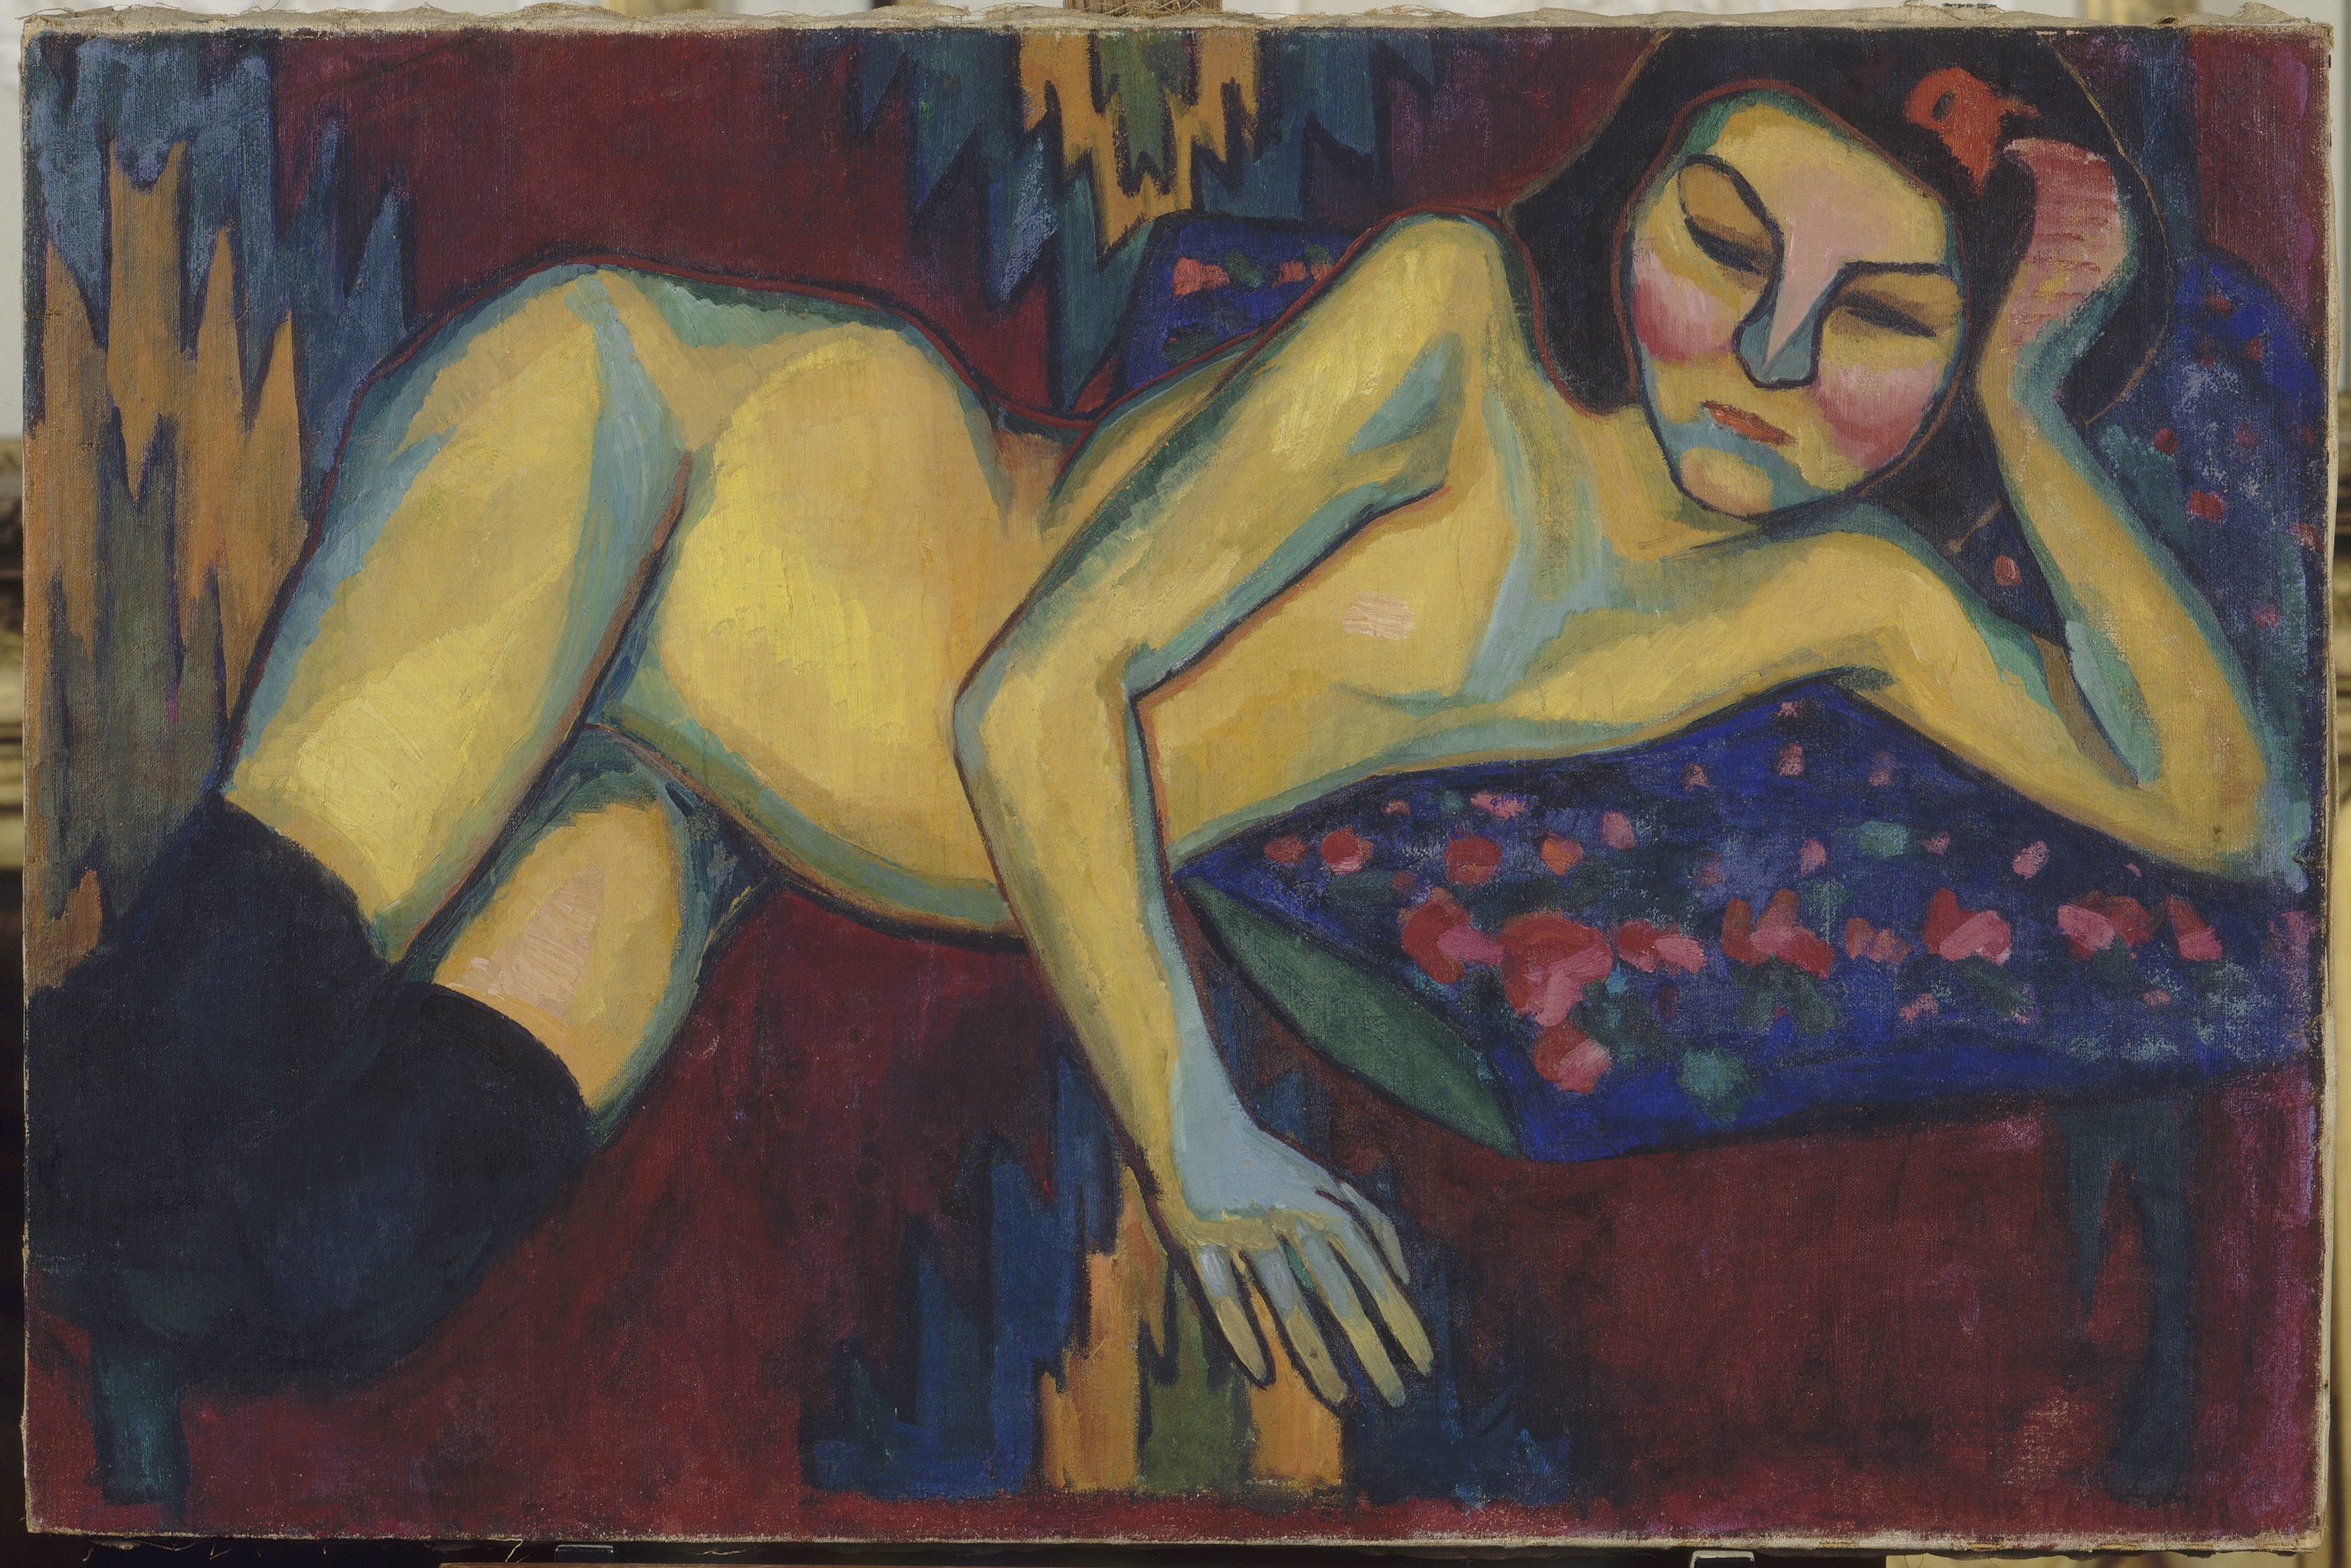 黃色裸體 by Sonia Delaunay - 1908 - 65 x 98.3厘米 